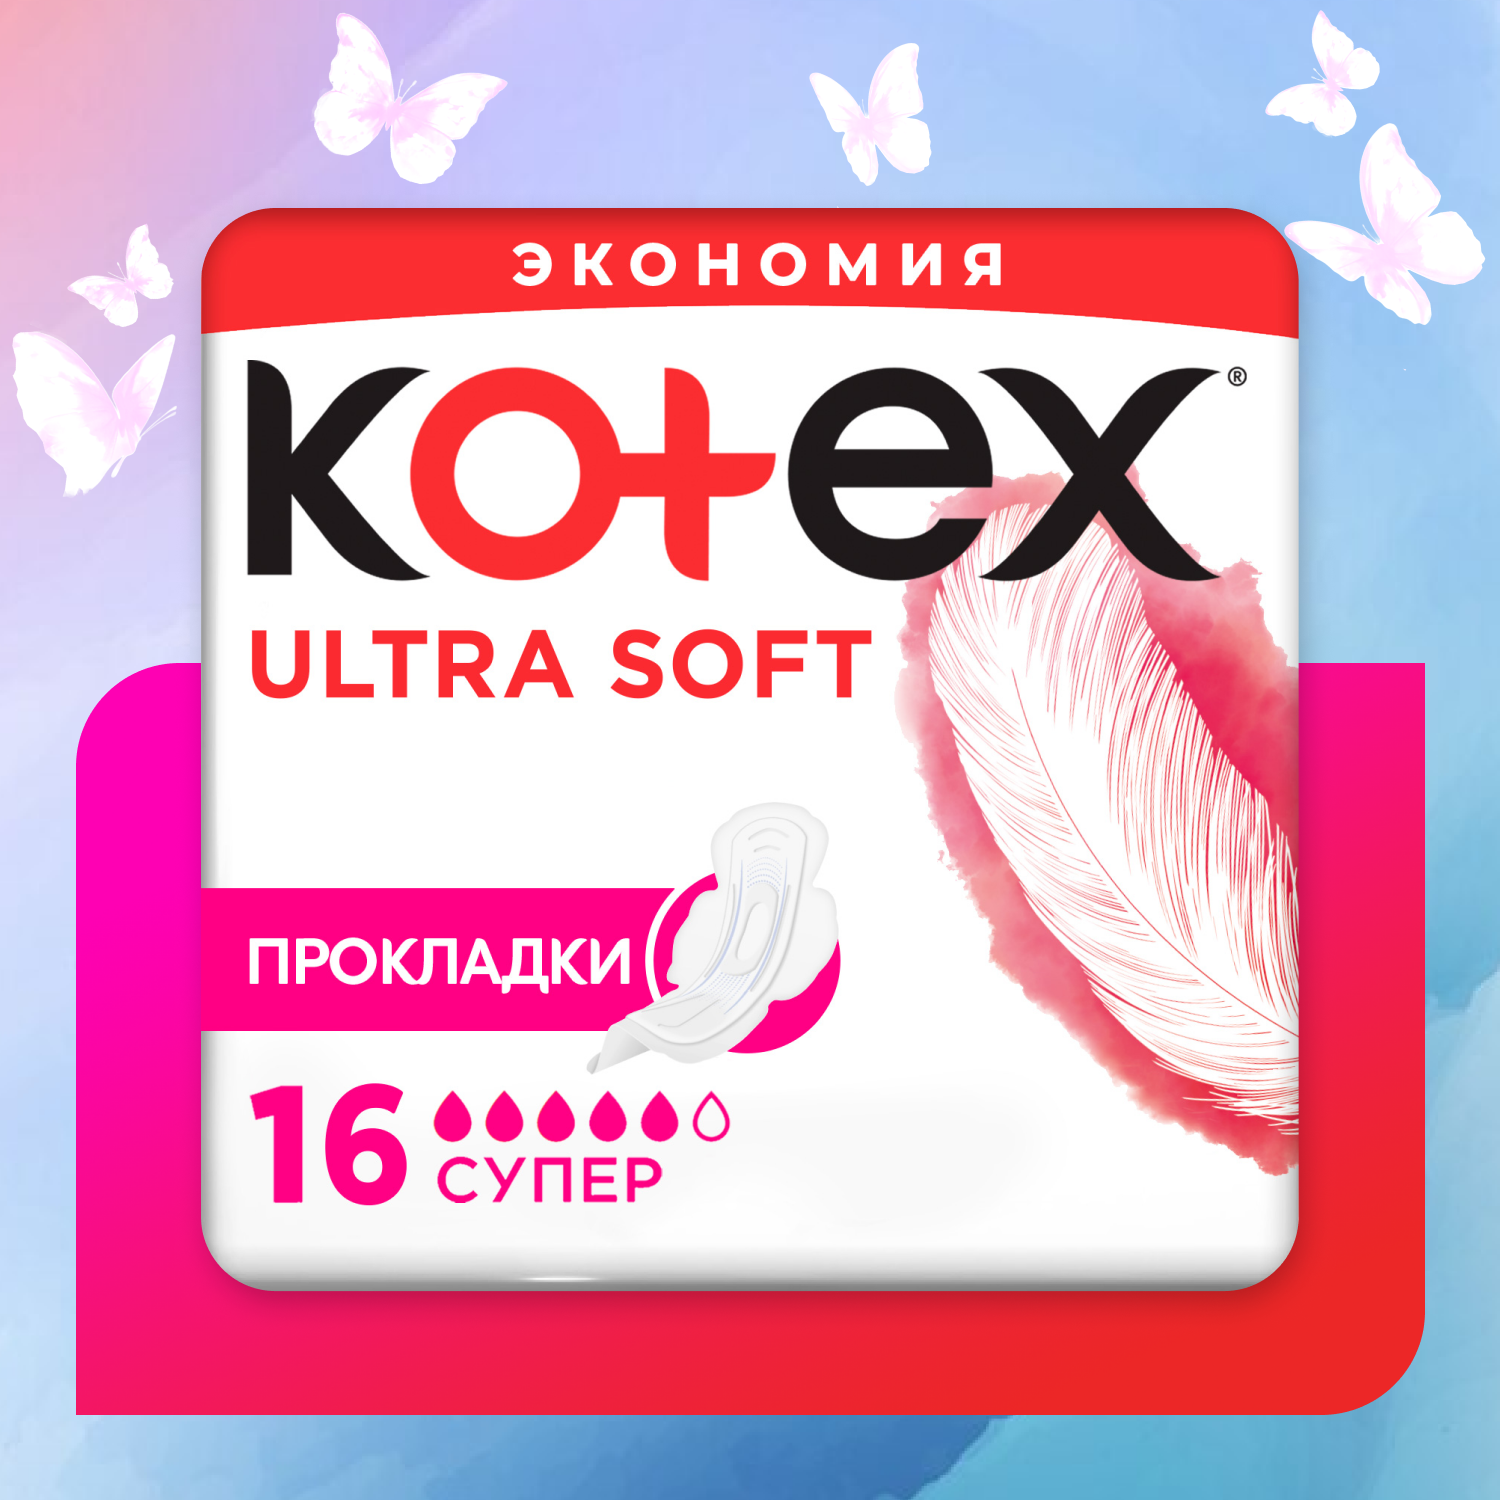 Прокладки KOTEX Ultra Soft Super 16шт - фото 1